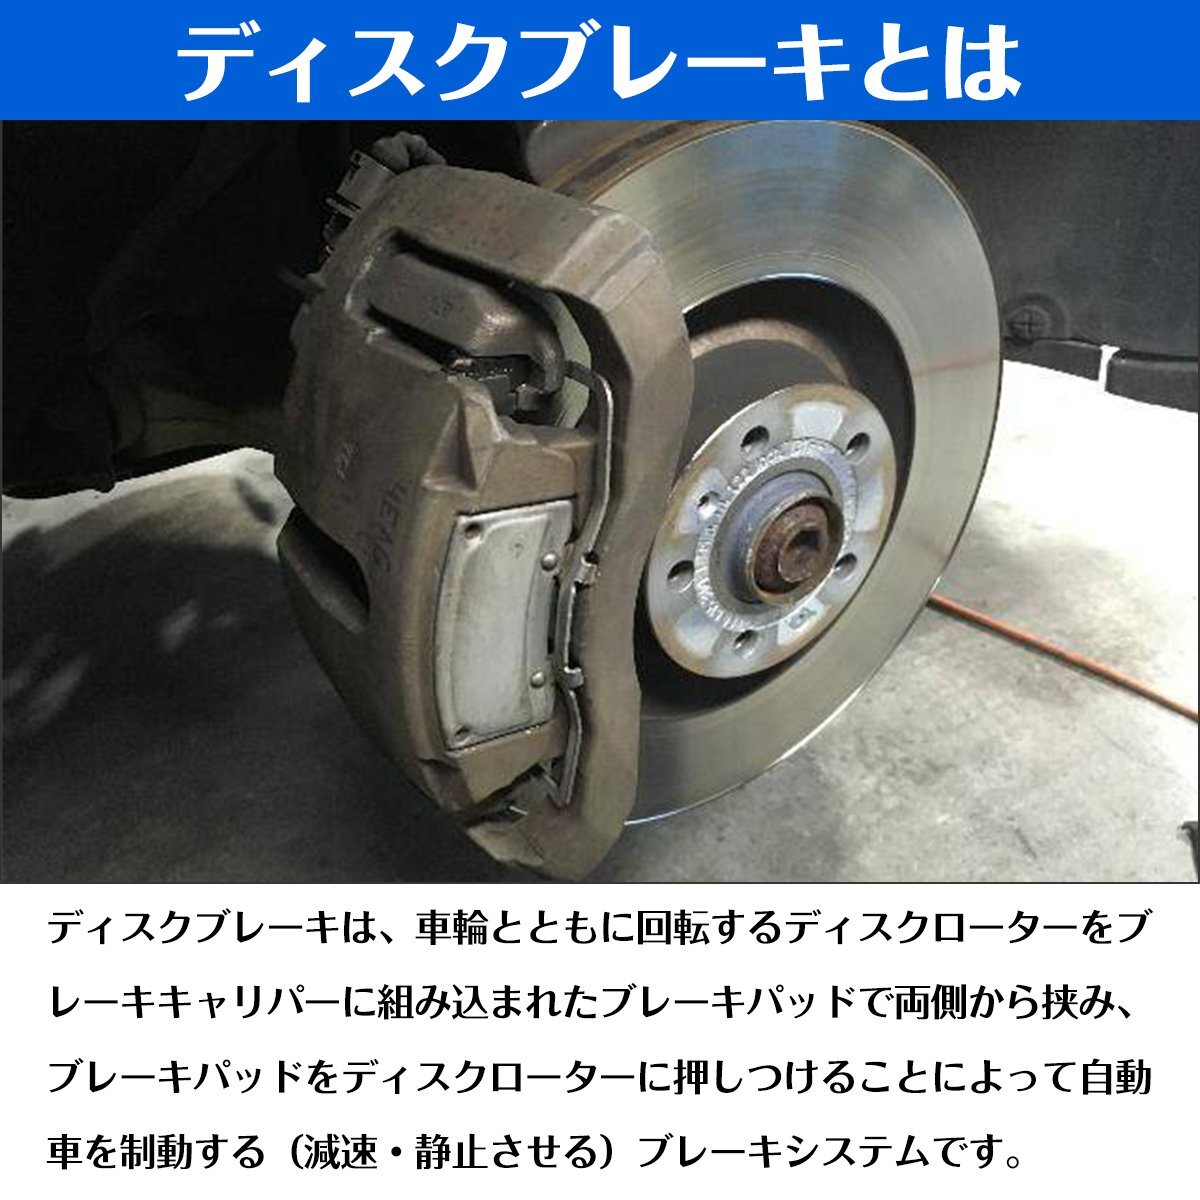 [ новый товар немедленная уплата ] новый товар Bluebird Sylphy KG11 передний тормоз тормозной диск левый и правый в комплекте тормозной диск 40206-3U80A/40206-3U800